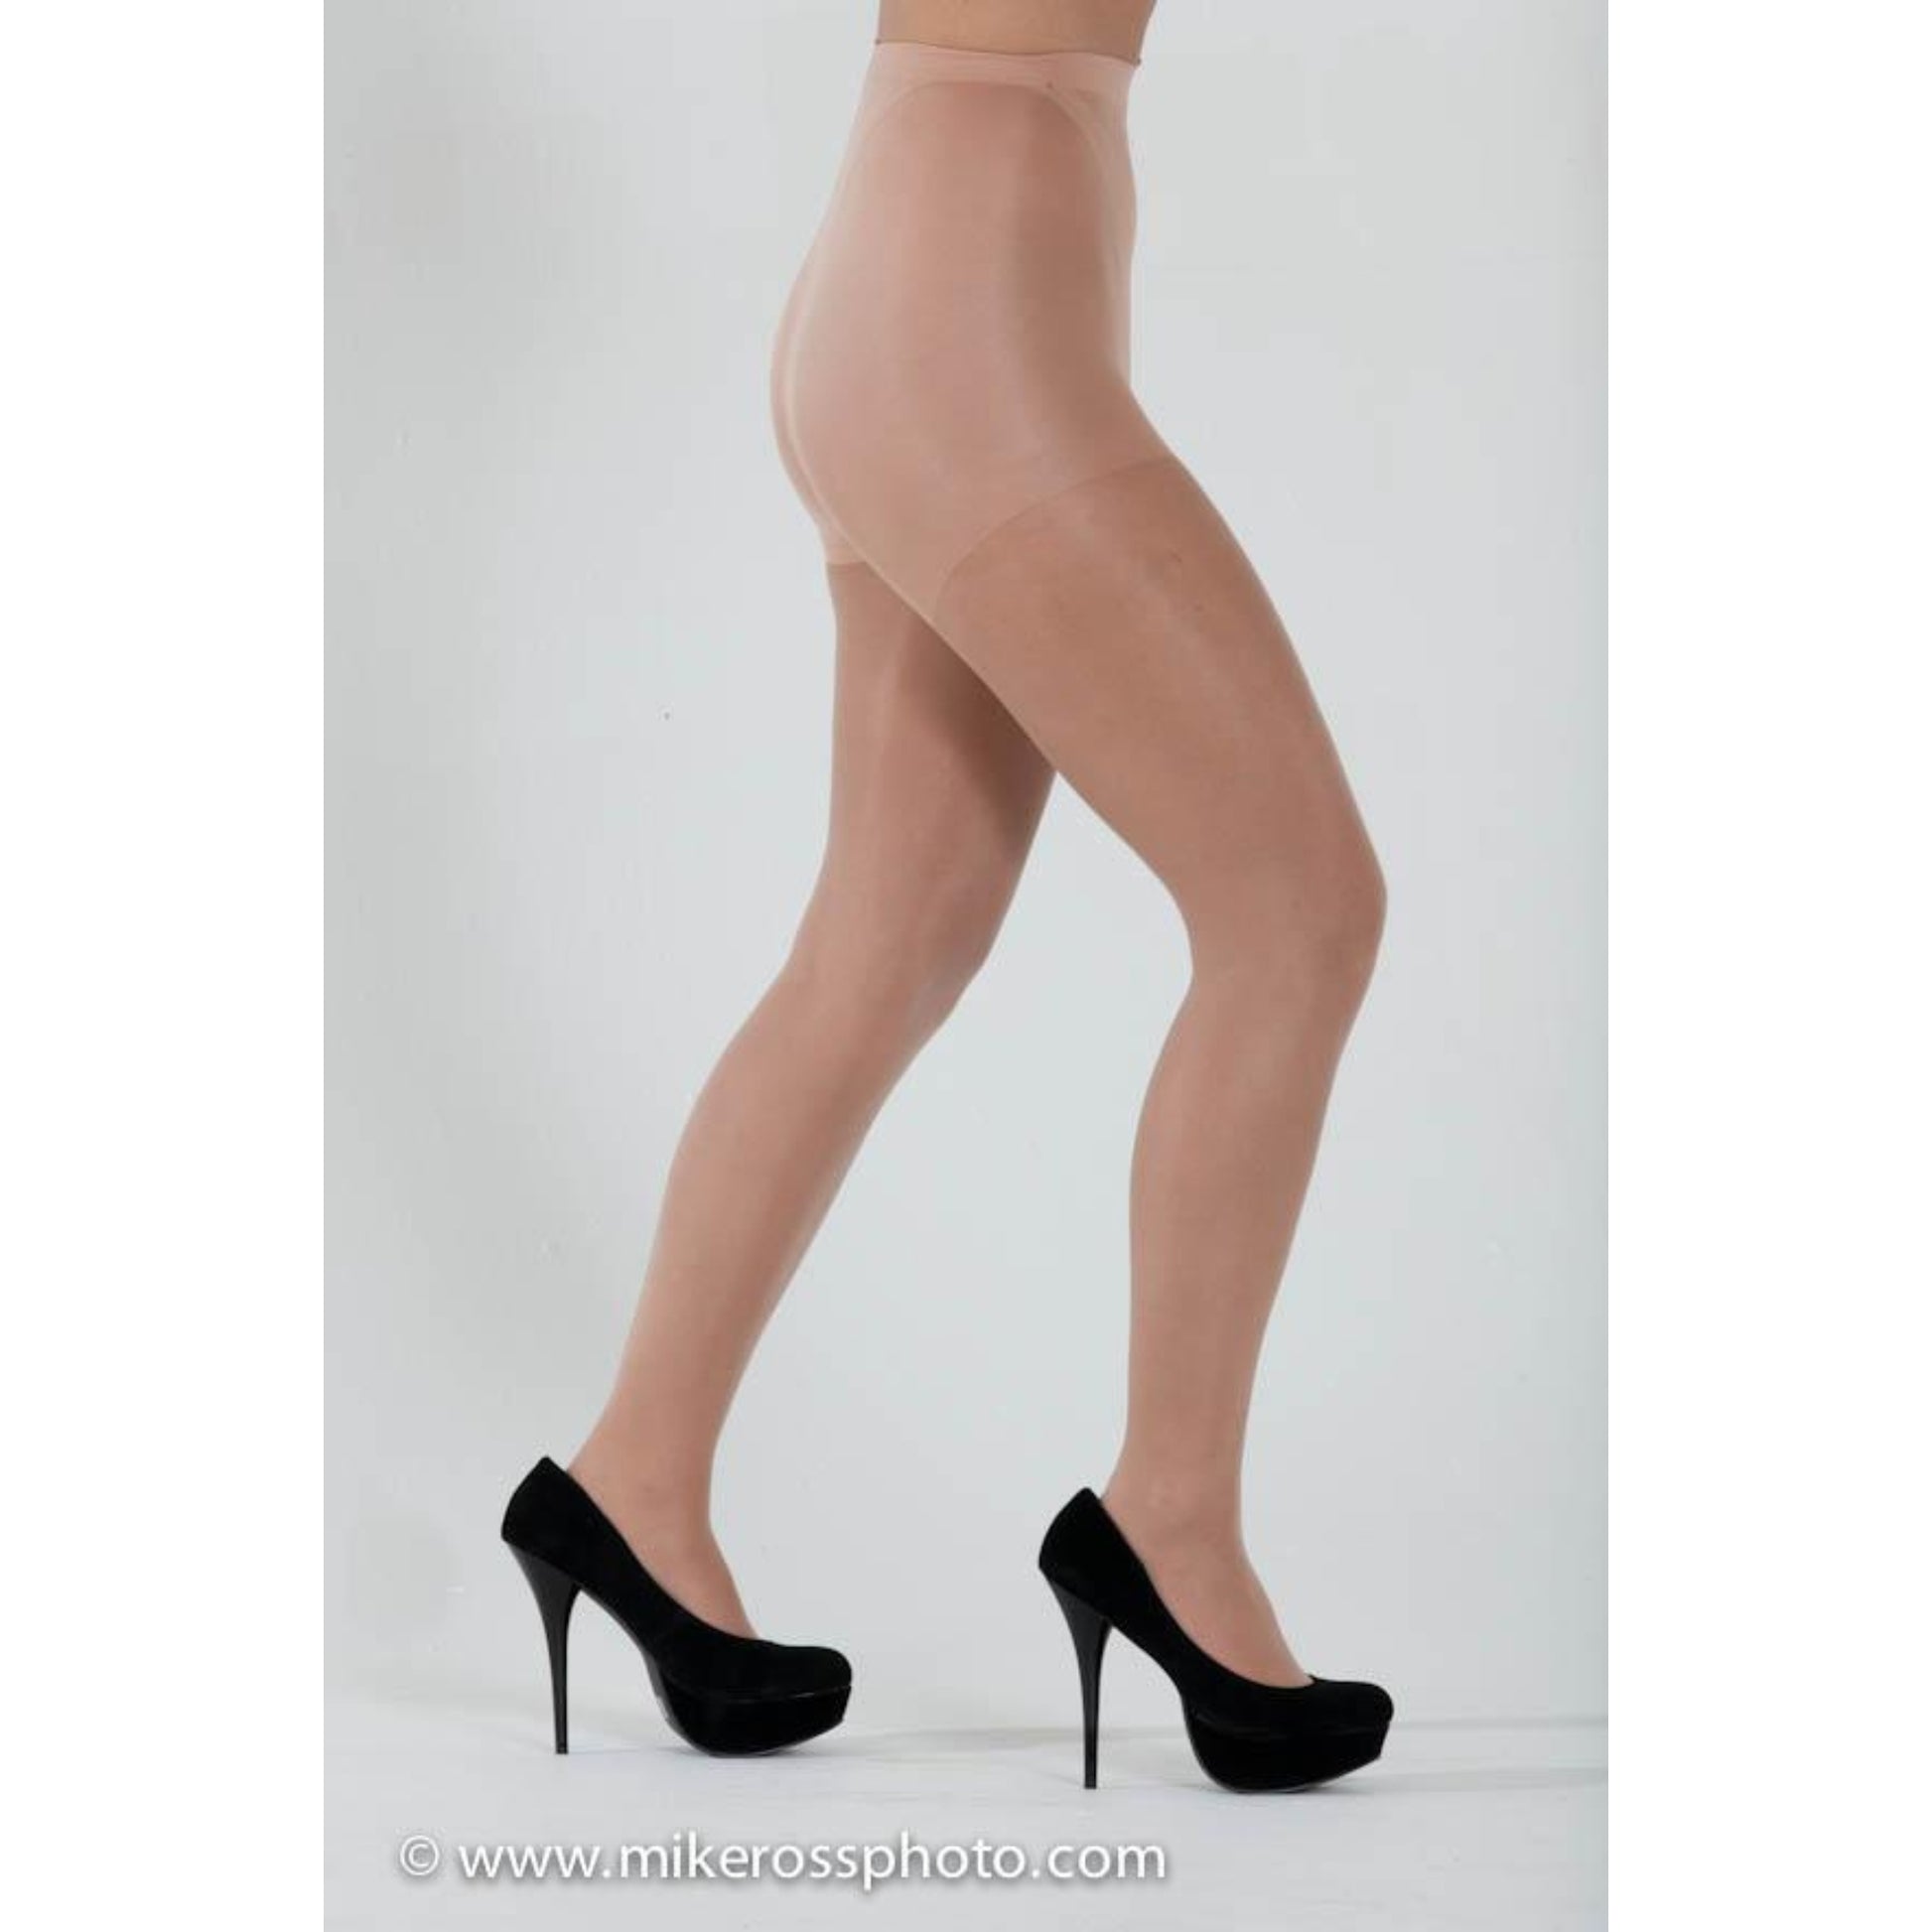 Ultra Sheer Pantyhose for Women